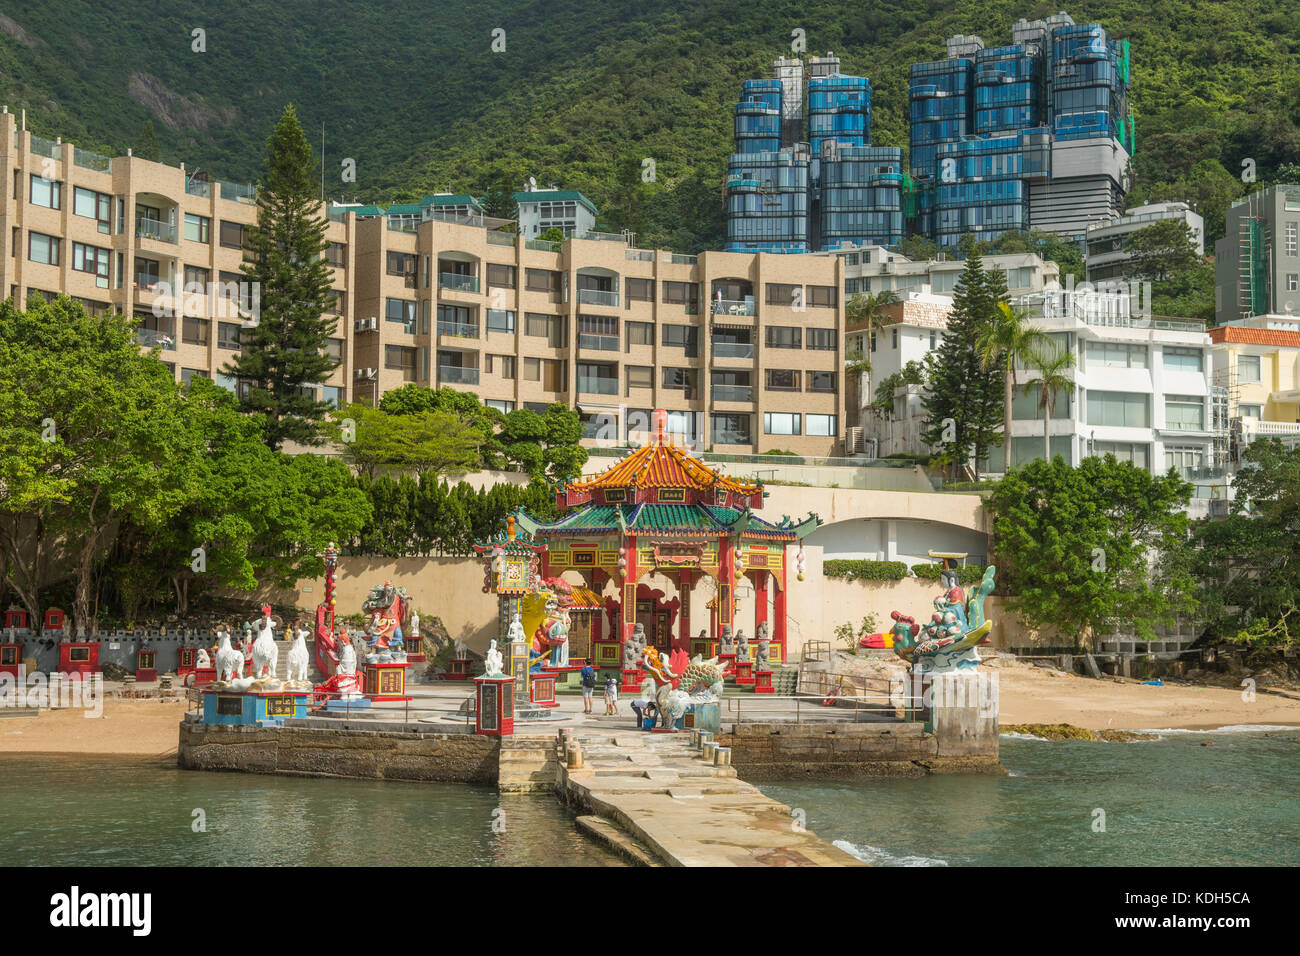 Temple in Repulse Bay, Hong Kong, China Stock Photo